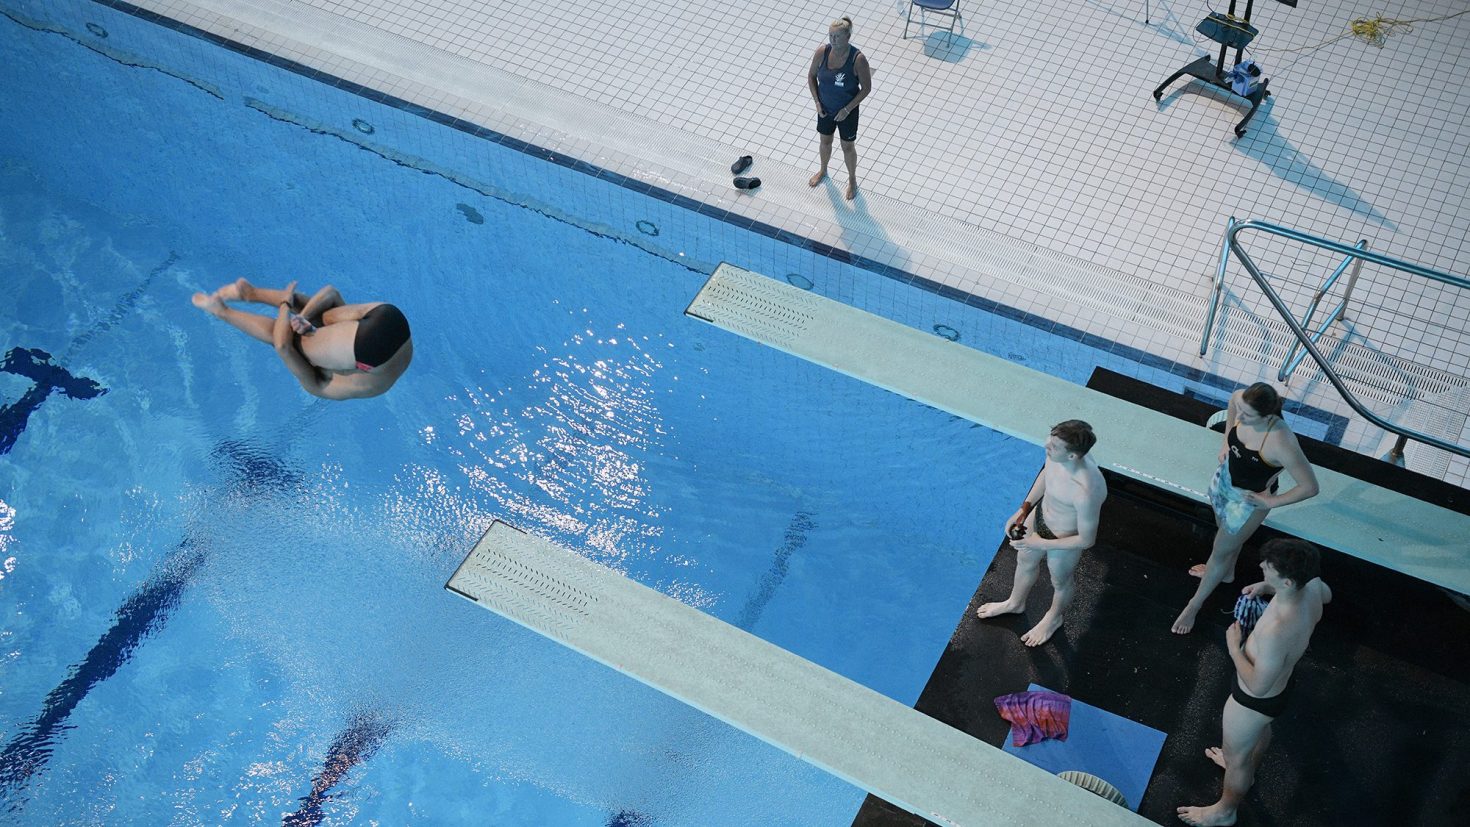 London Aquatics Centre Diving Pool